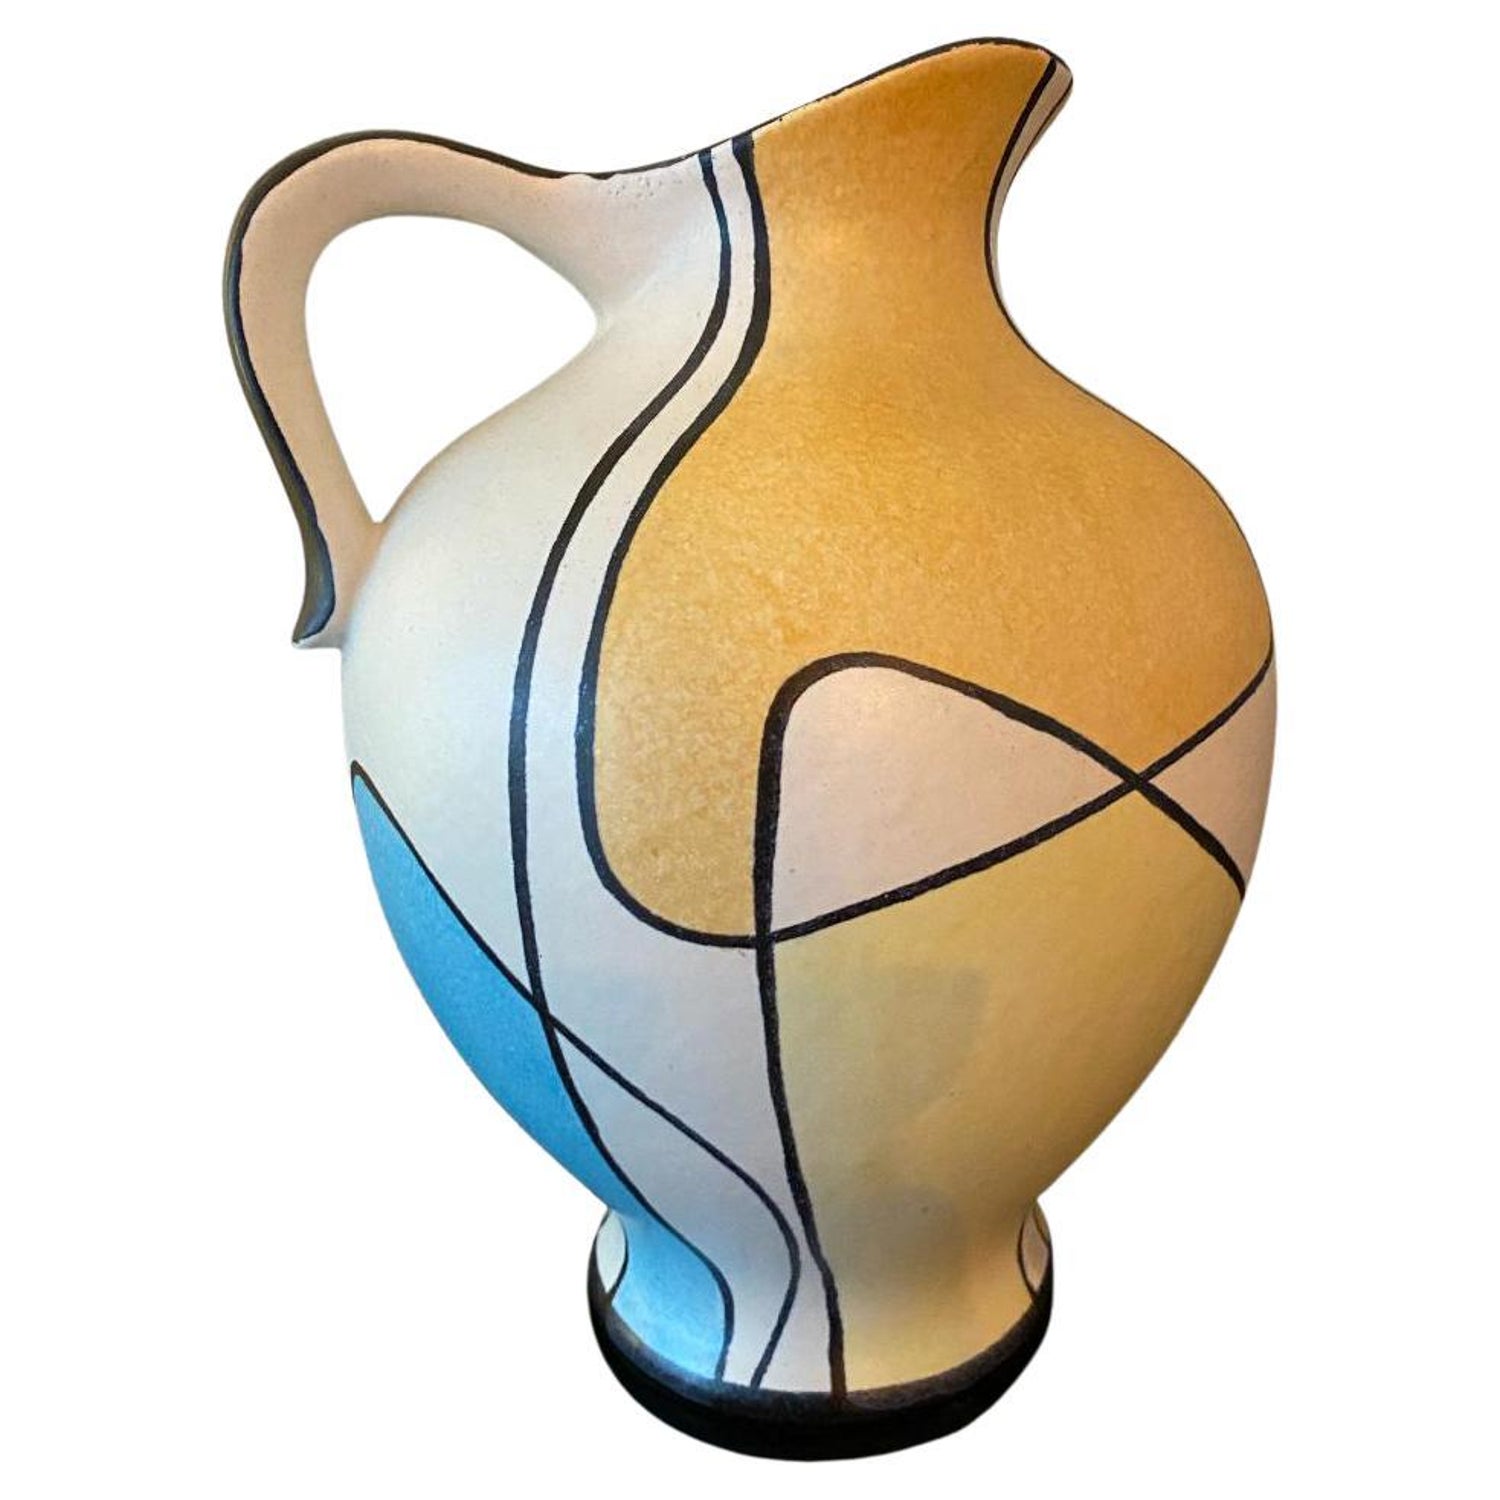 Bodo Mans - 12 For Sale on 1stDibs | bodo mans pottery, bodo mans bay  keramik, bay keramik bodo mans